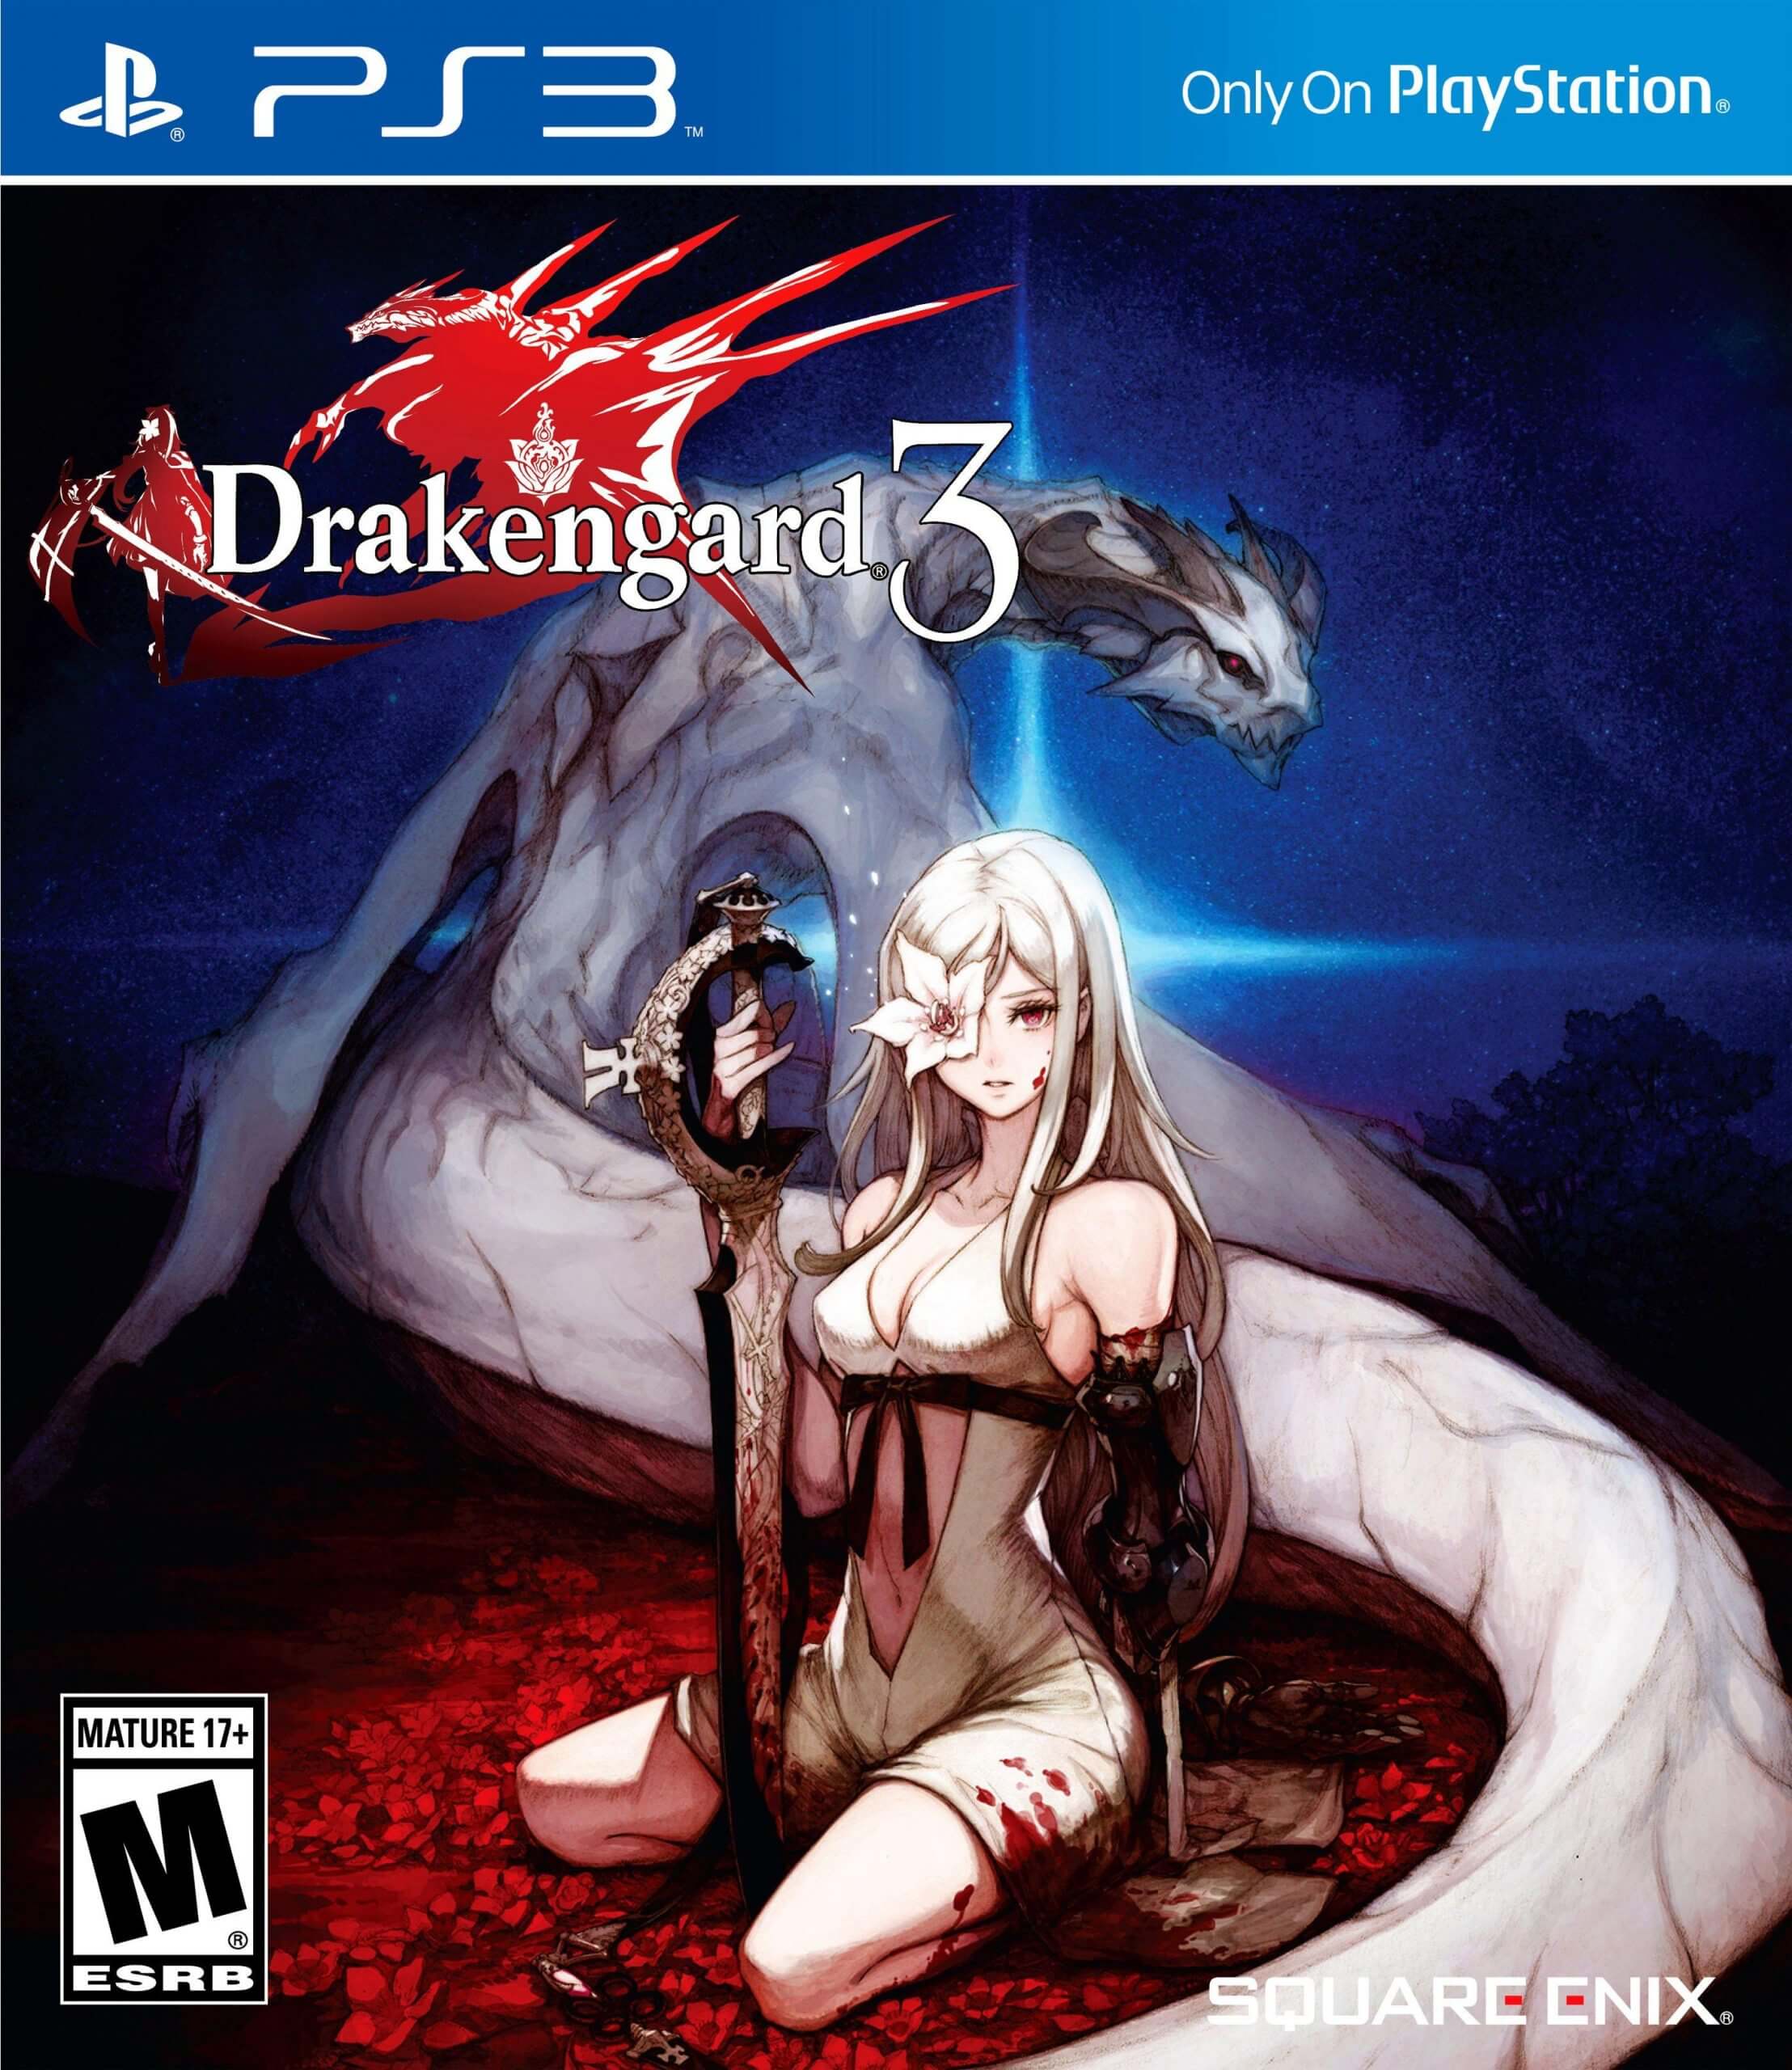 drakengard 3 one download